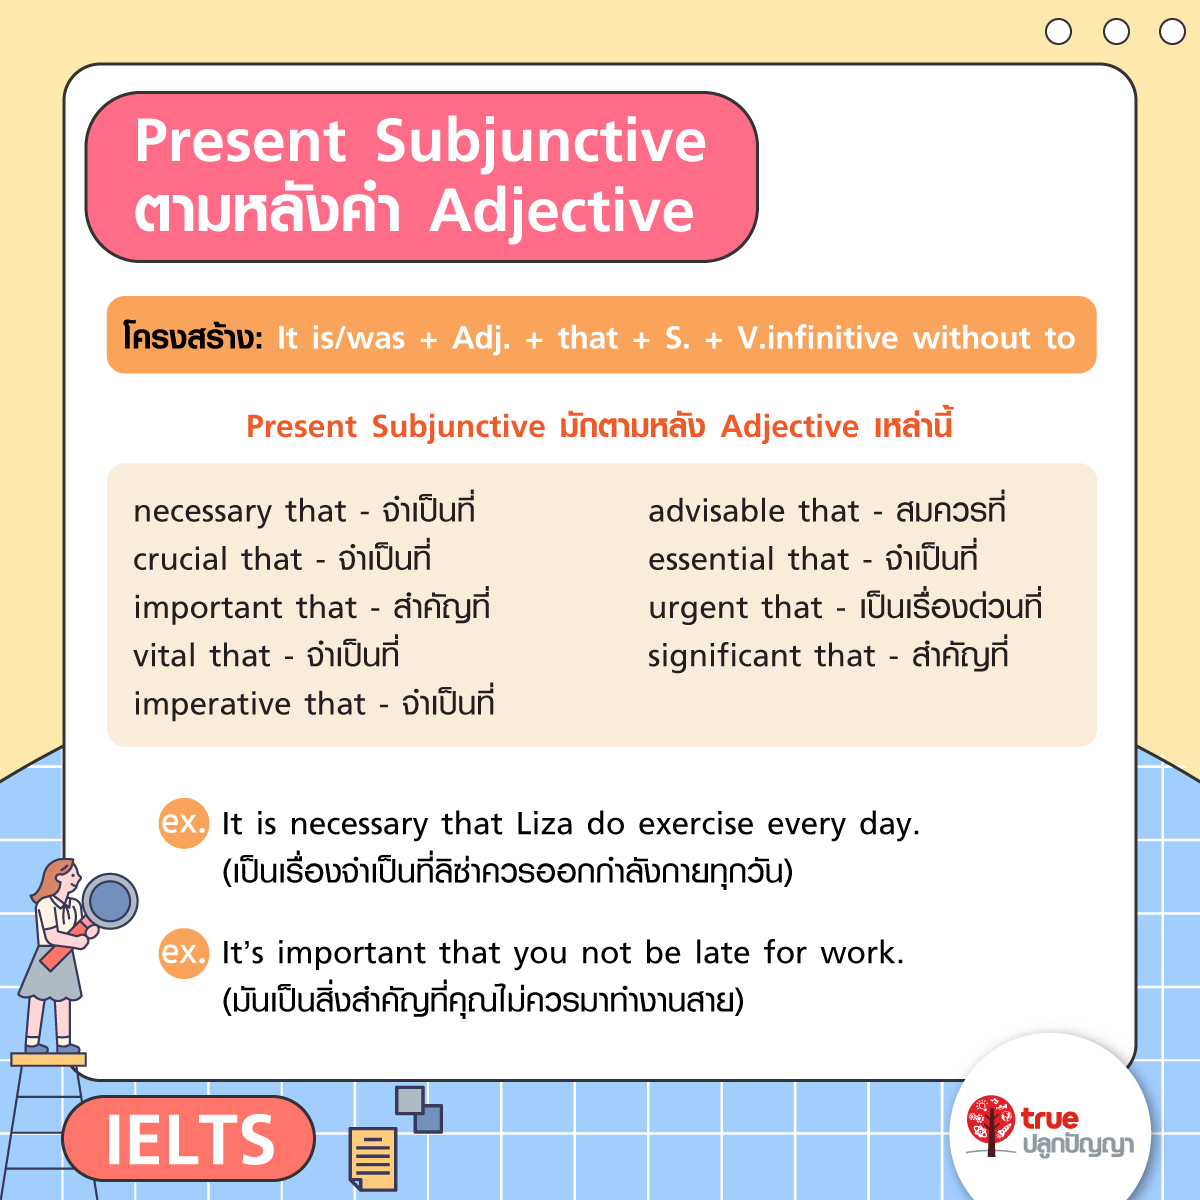 สรุปแกรมม่า IELTS Subjunctive พิชิต Band 7.0